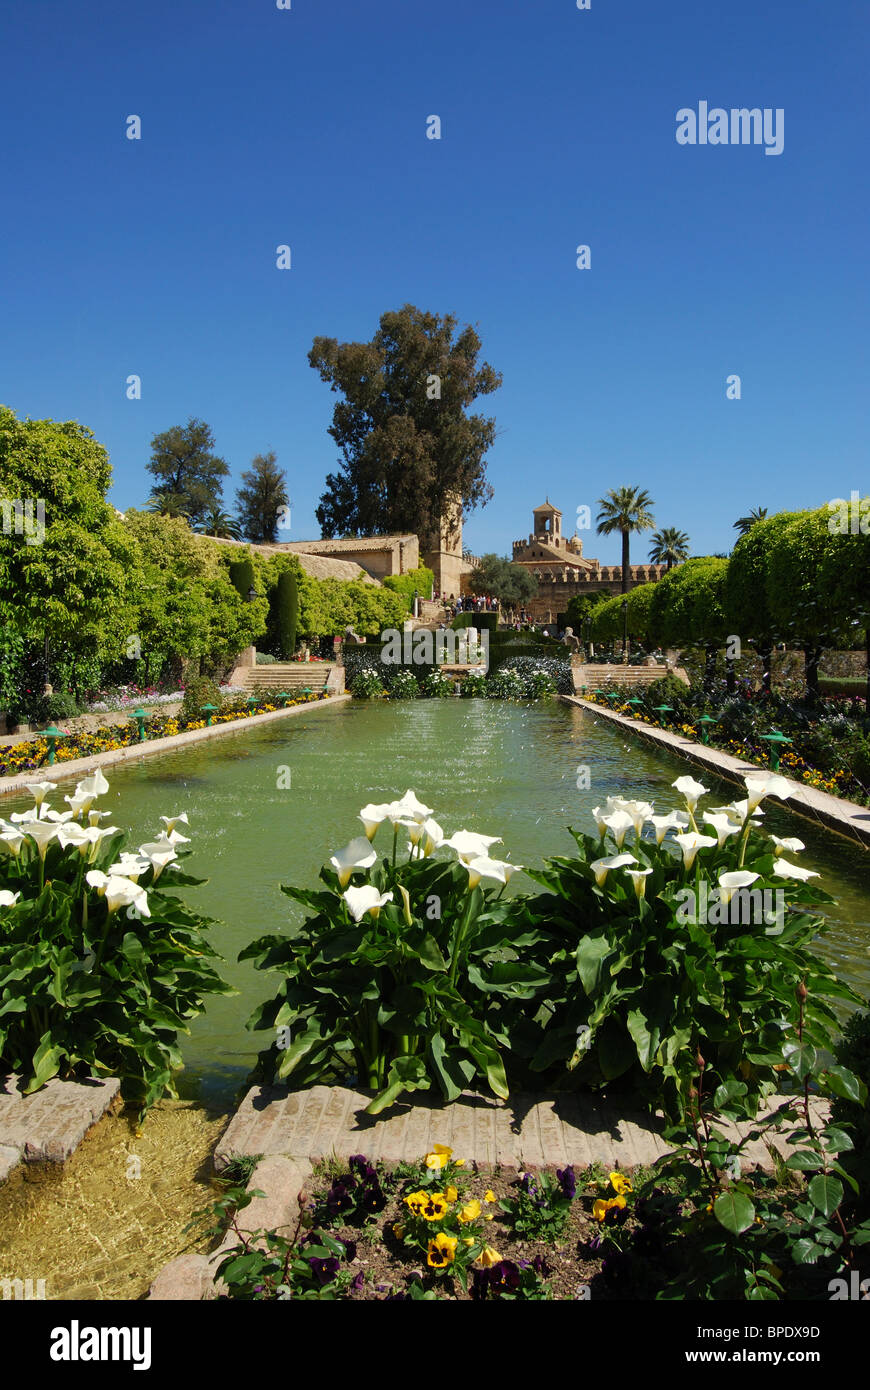 Palace Forteresse des Rois Chrétiens - jardins d'eau, Córdoba, Cordoue, Andalousie, province de l'Espagne, l'Europe de l'Ouest. Banque D'Images